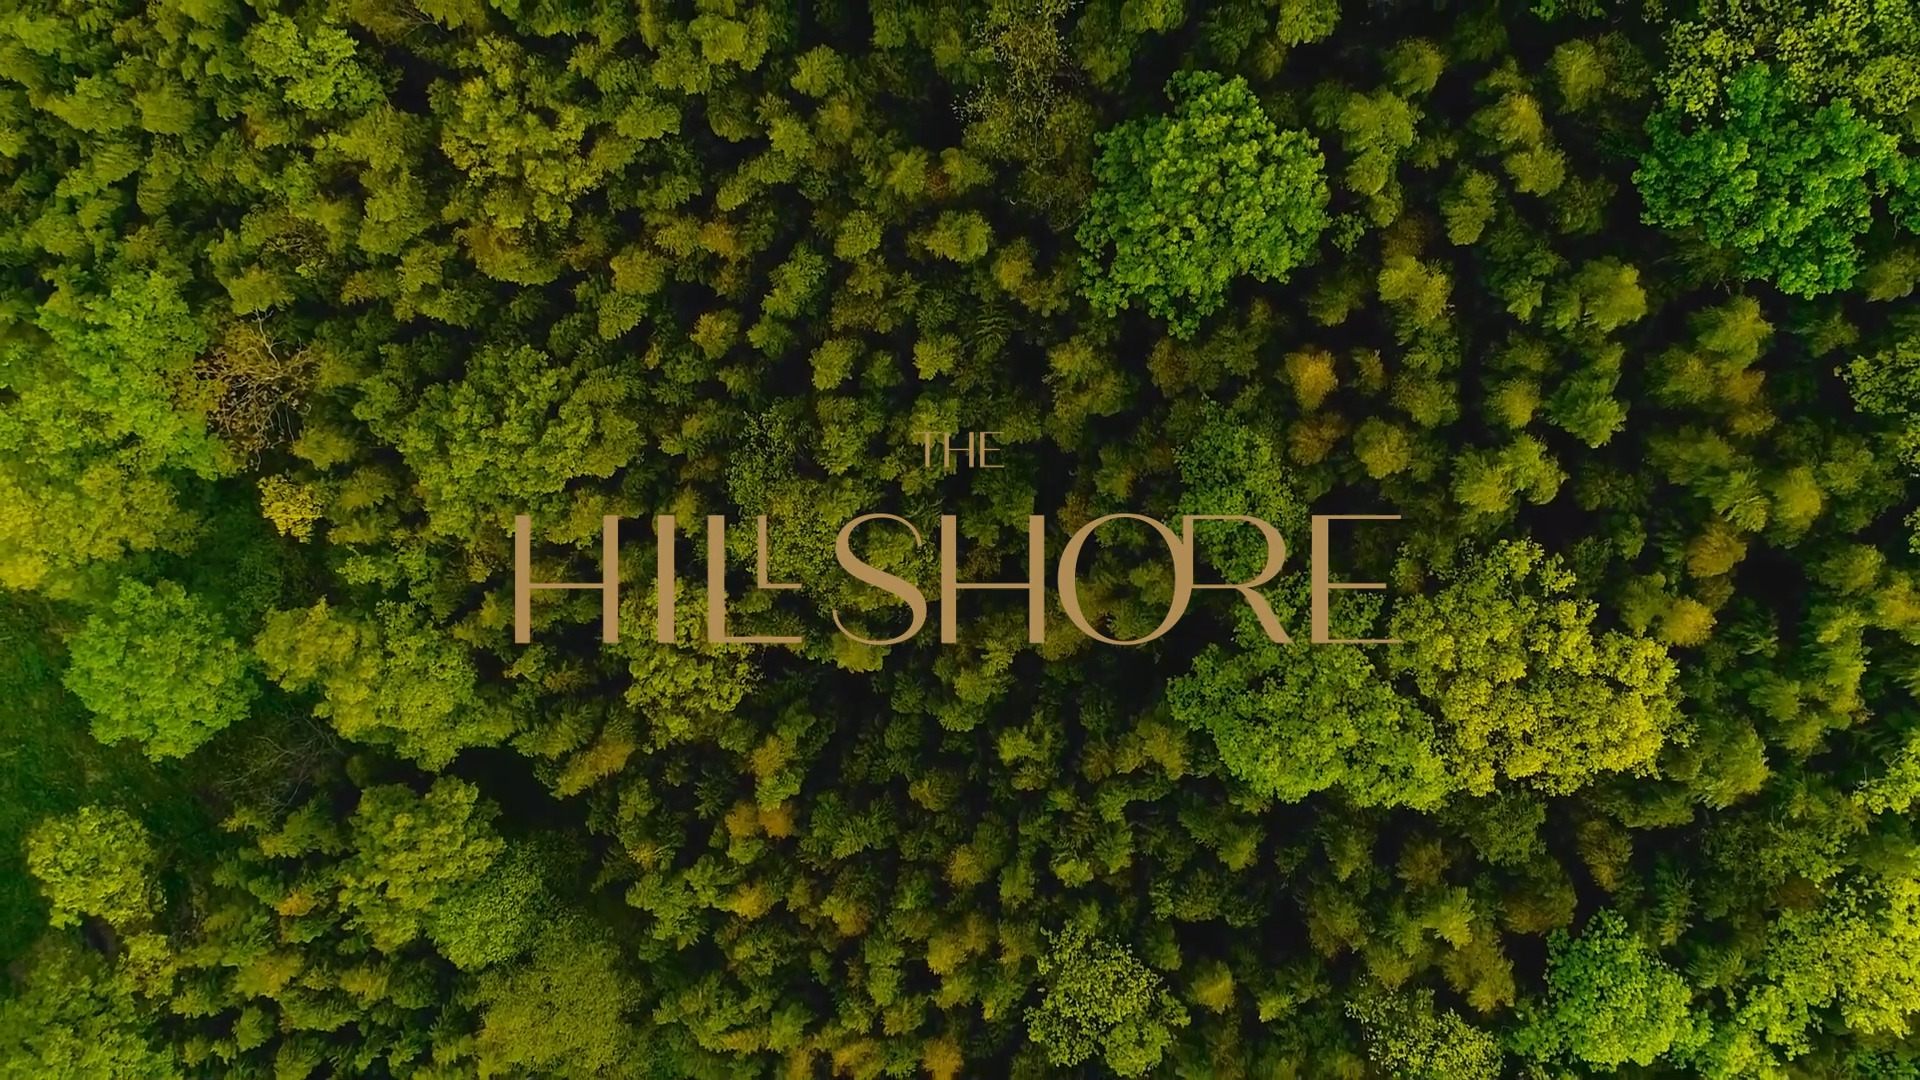 The Hillshore Video